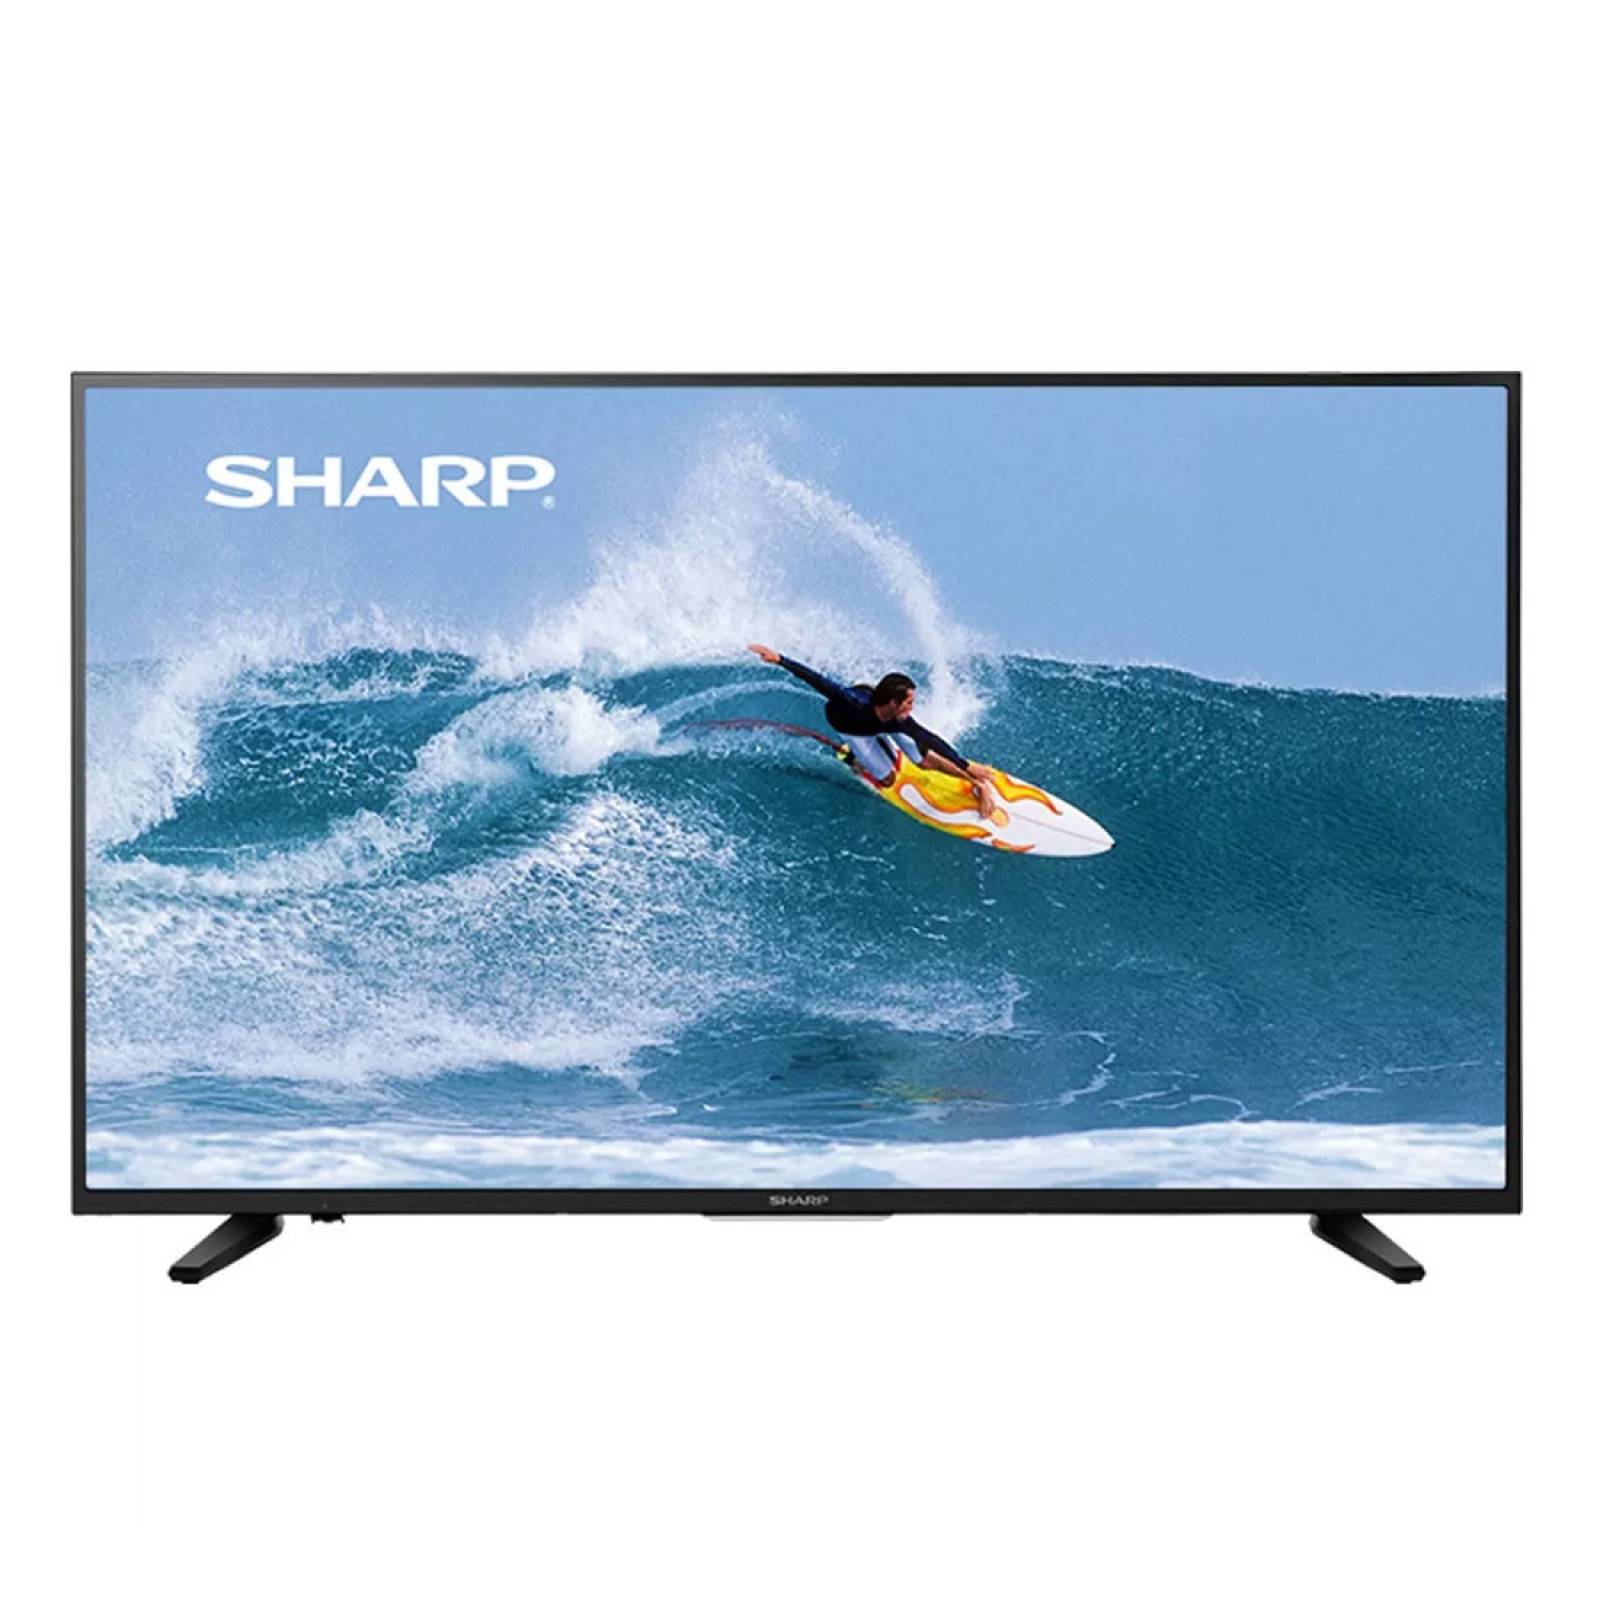 Smart TV Full Web Pantalla 55" LED 4K 60Hz LC-55Q7530U Sharp